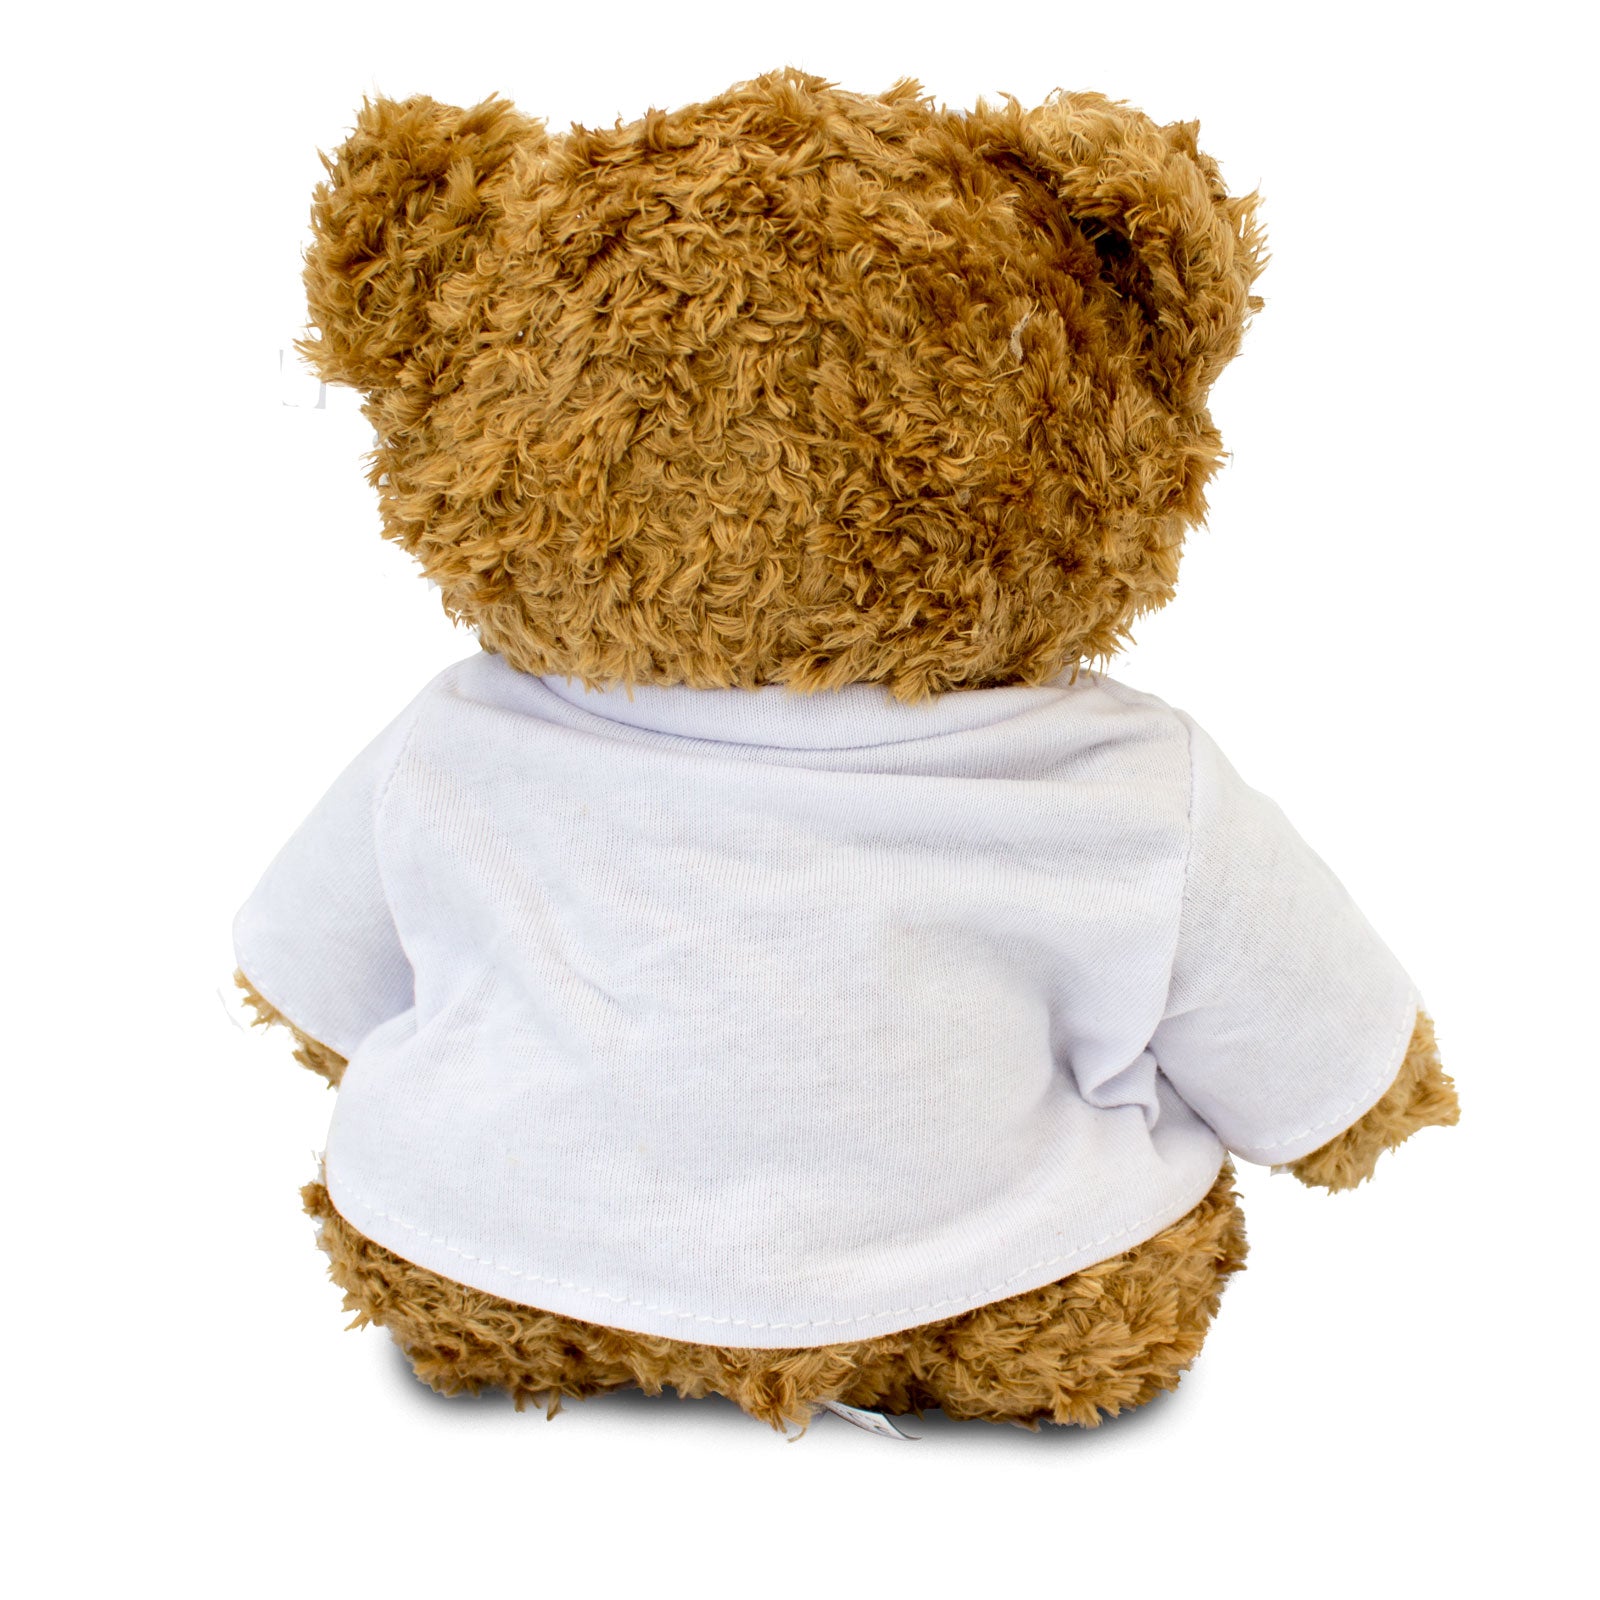 I Love Gem - Teddy Bear